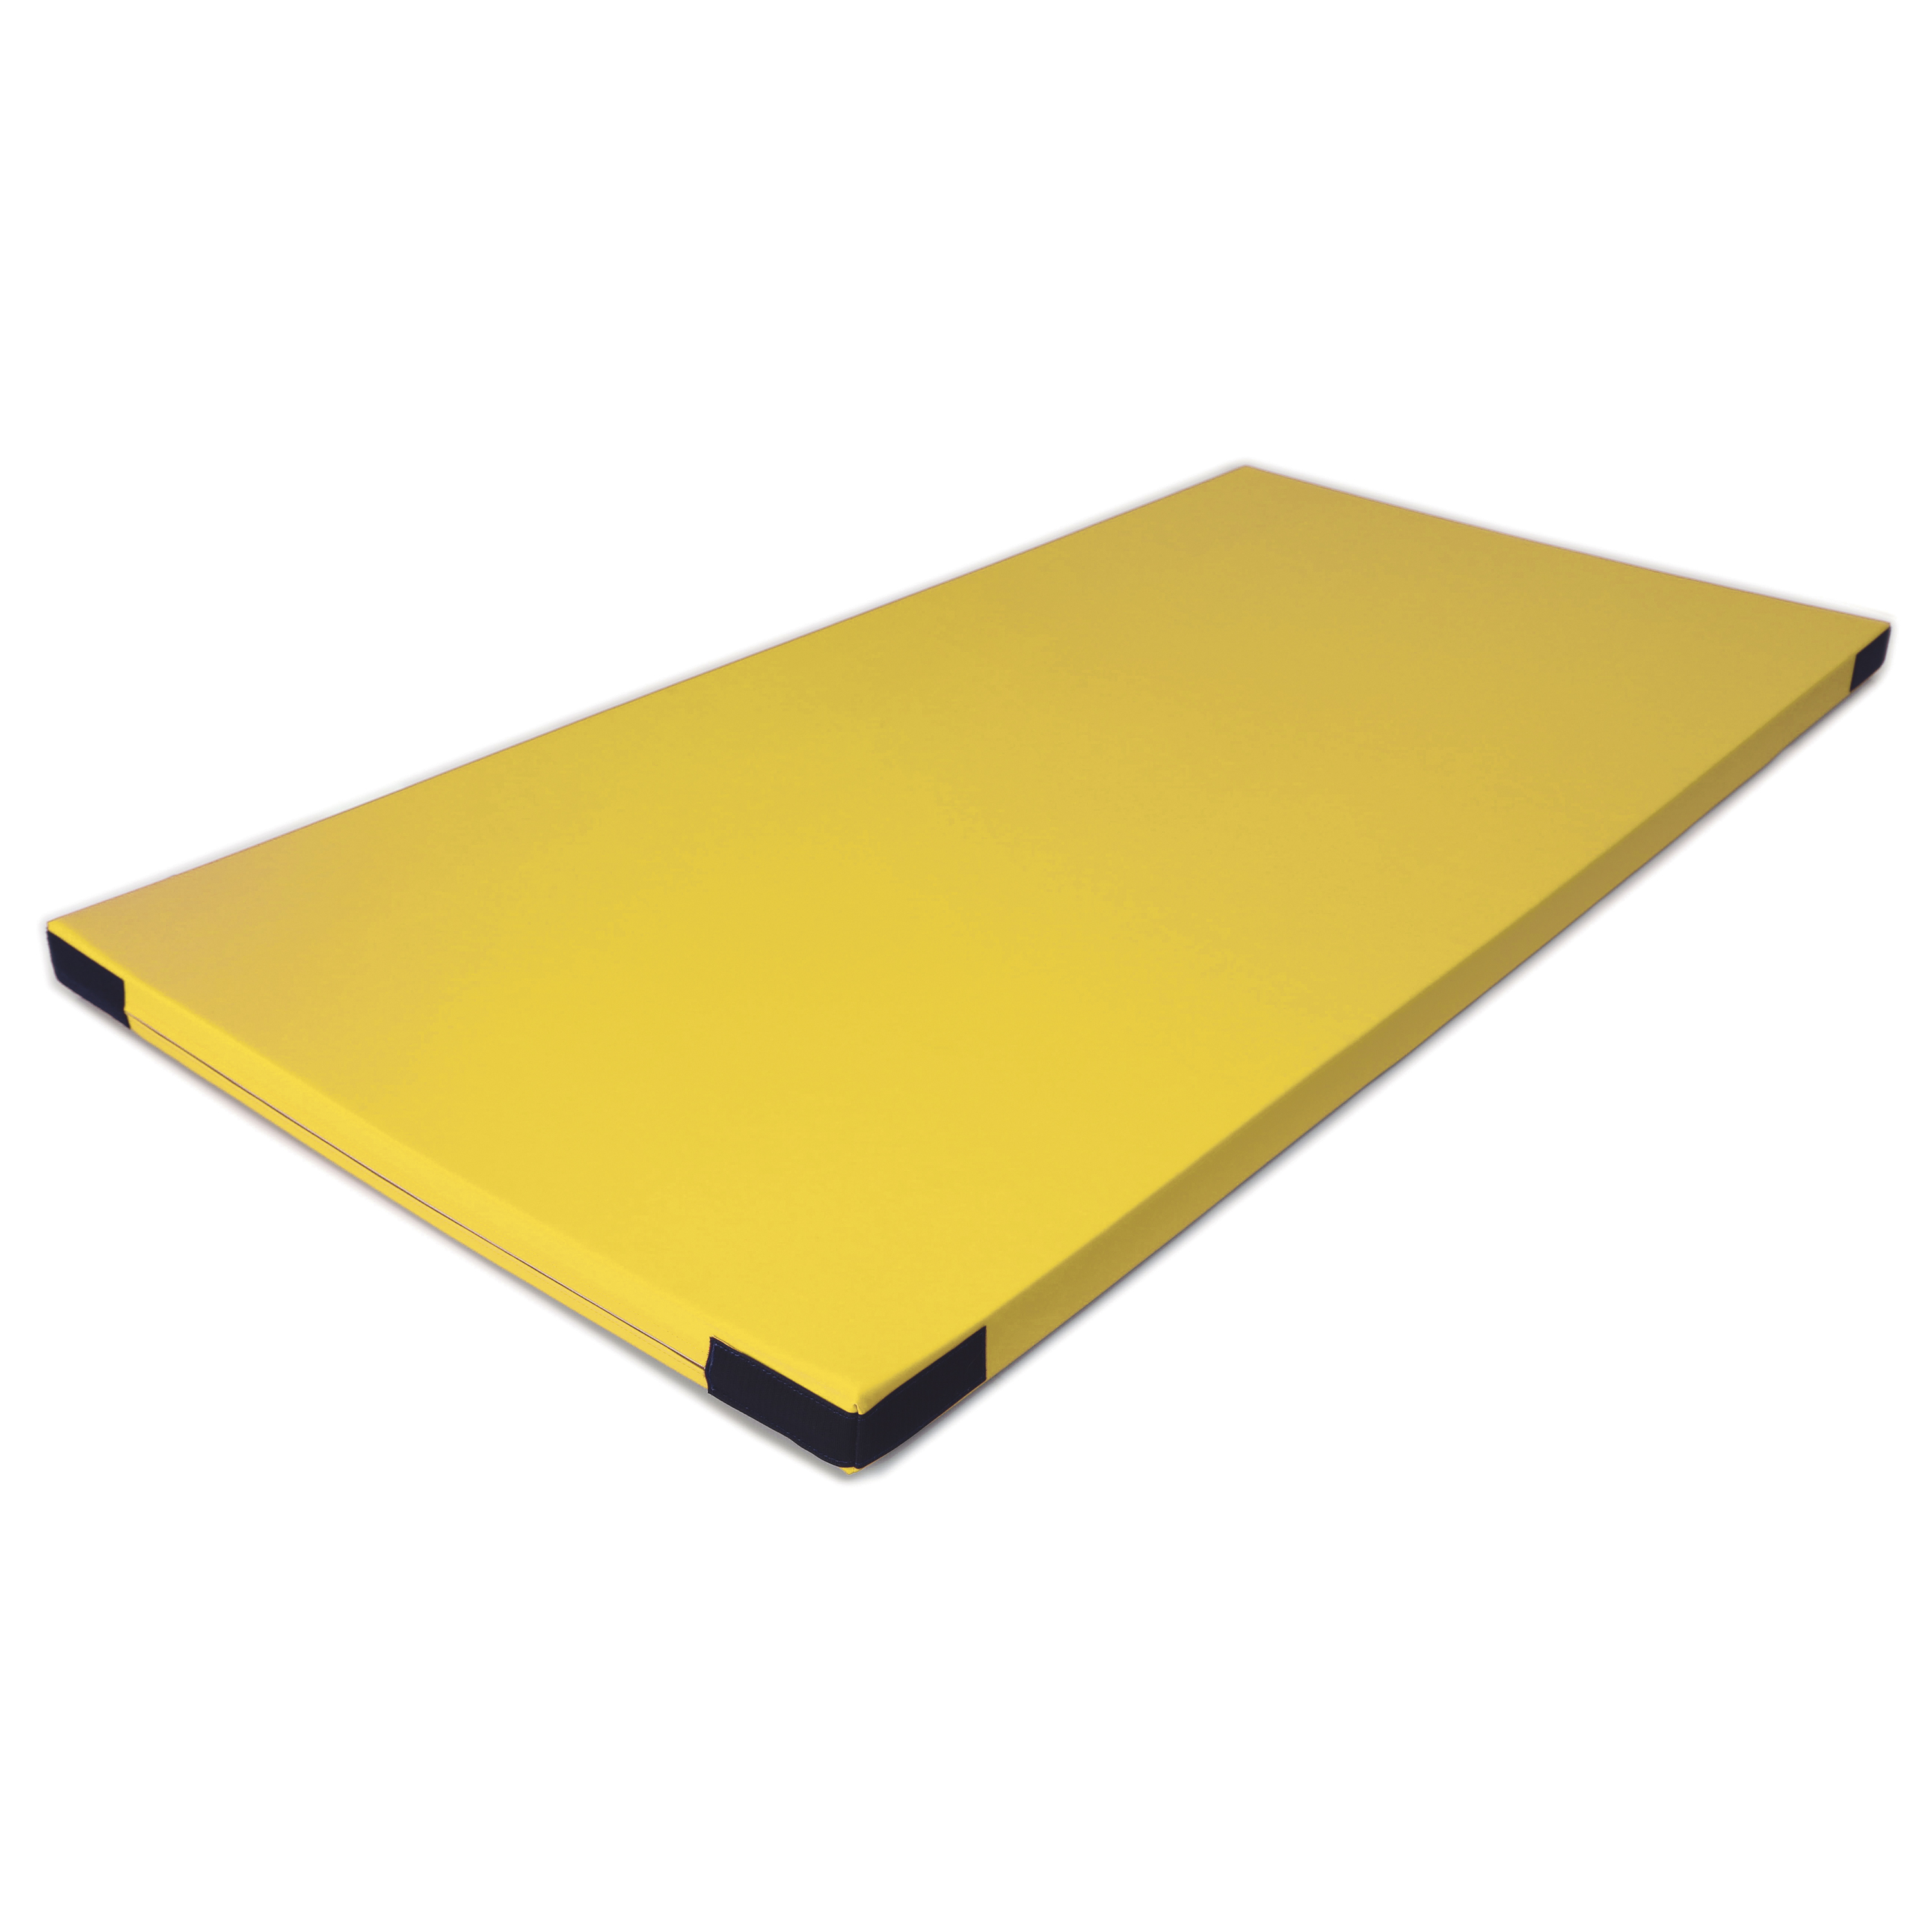 Fallschutzmatte Superleicht 'gelb' Klett, 100 x 100 cm